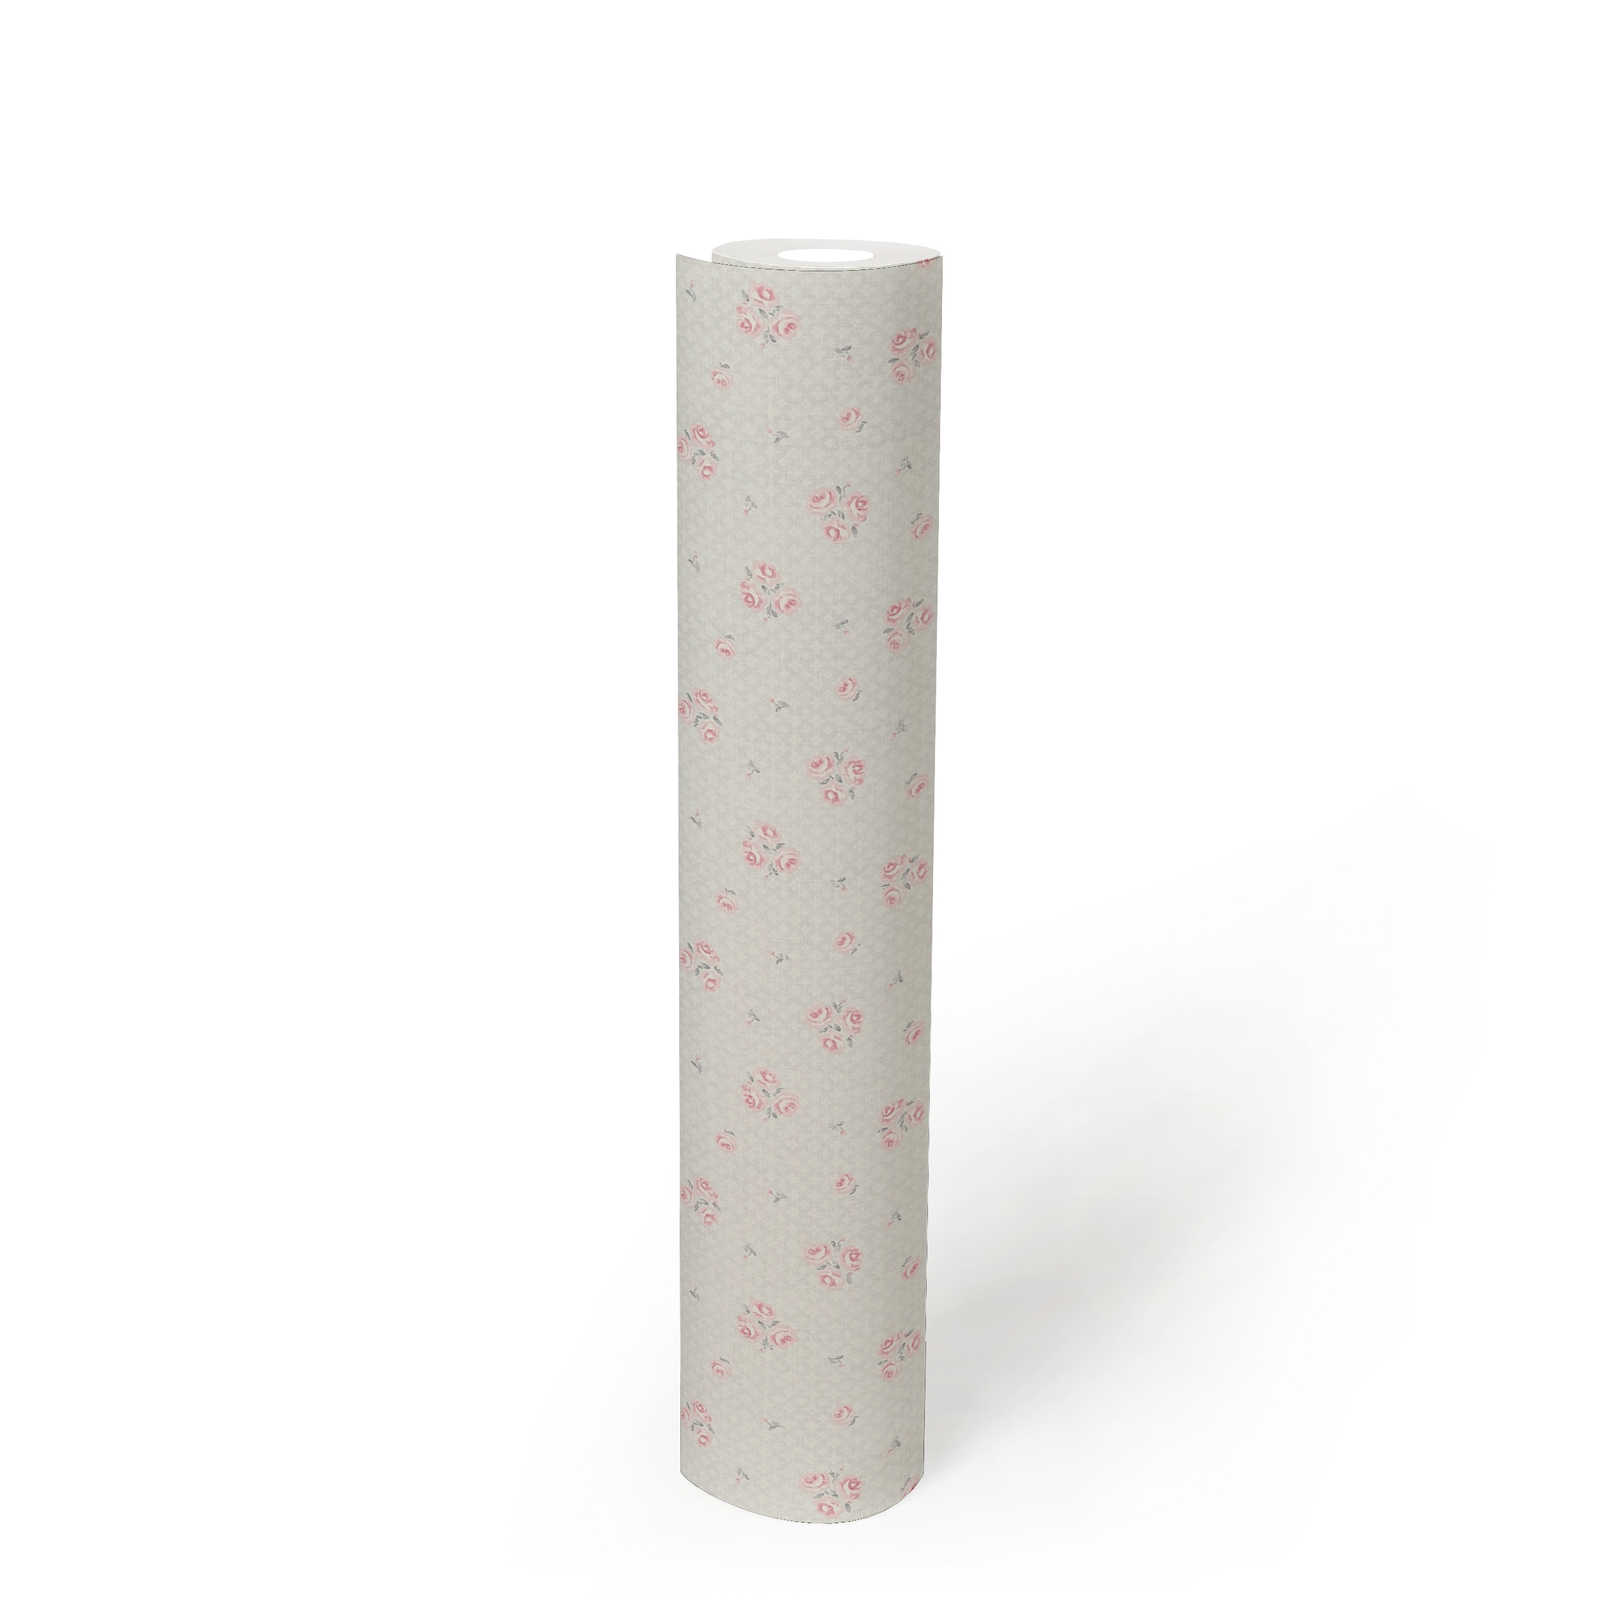             Carta da parati in tessuto non tessuto con raffinato motivo floreale Shabby Chic - grigio chiaro, rosso, bianco
        